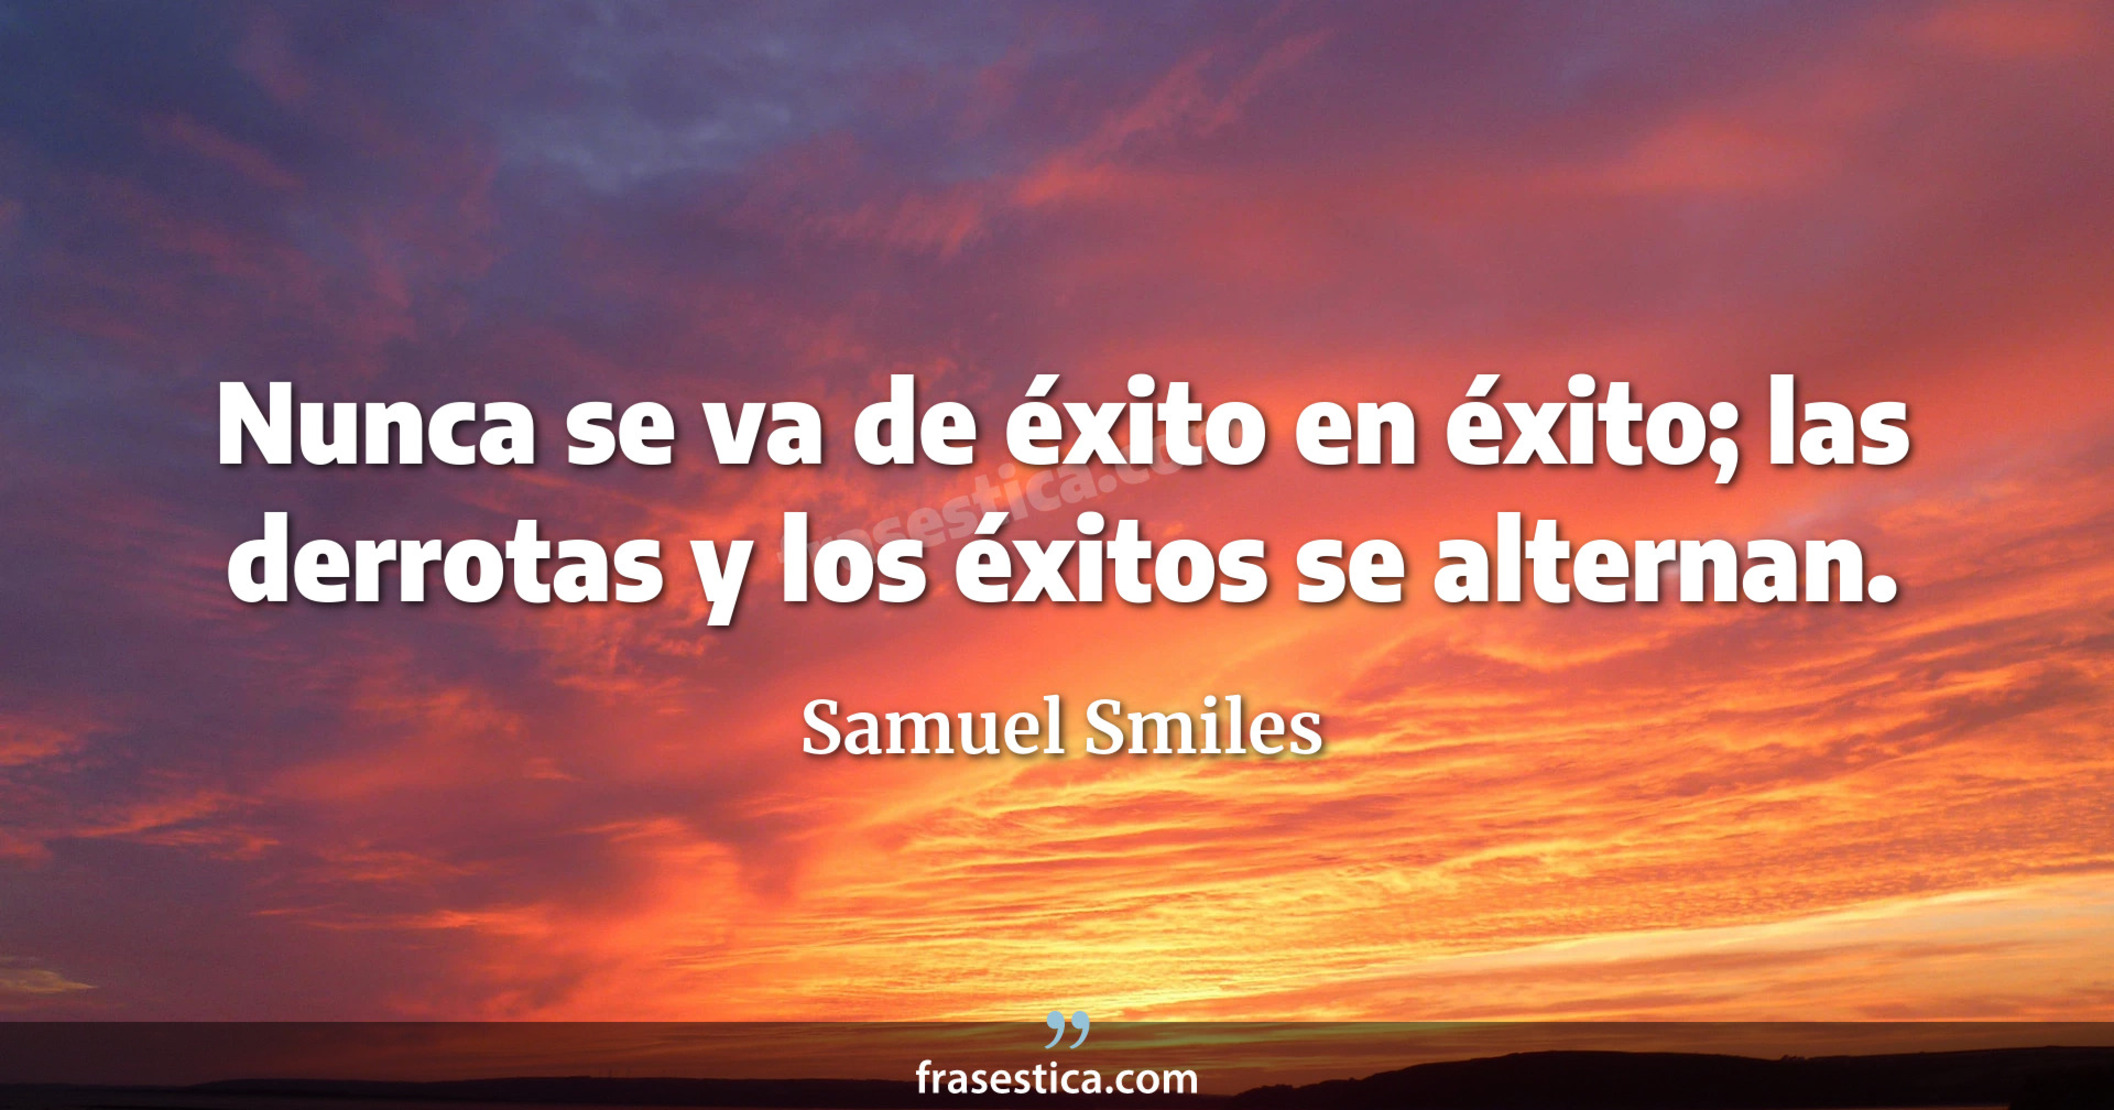 Nunca se va de éxito en éxito; las derrotas y los éxitos se alternan. - Samuel Smiles